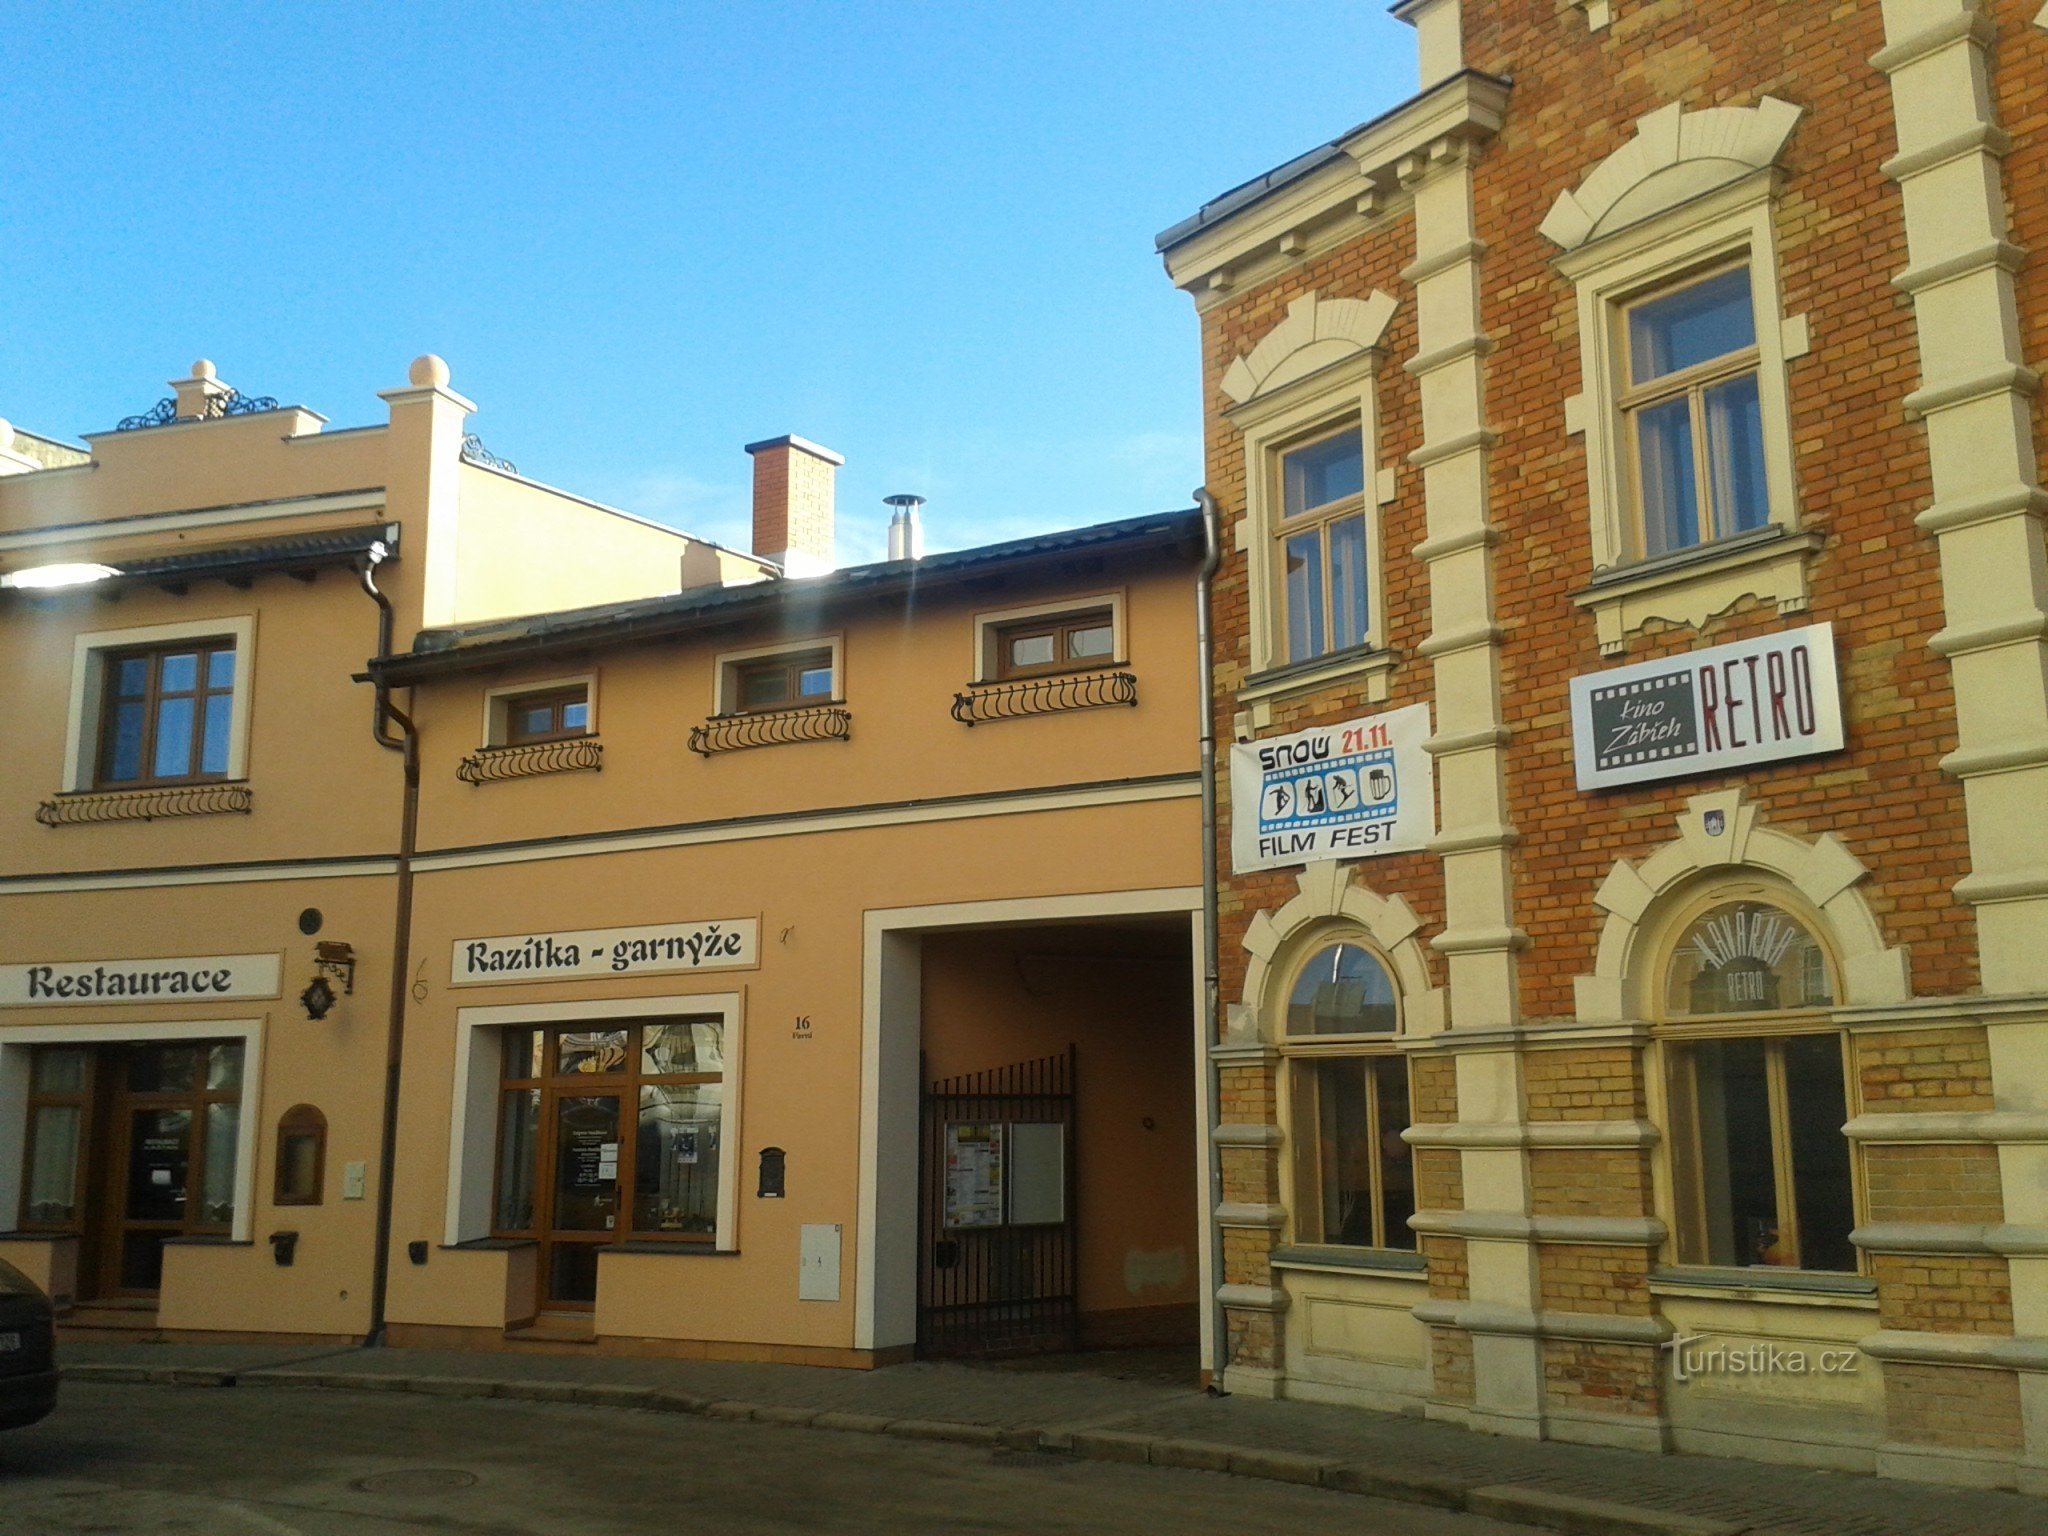 Zábřeh - Retro stavba kina s kavarno